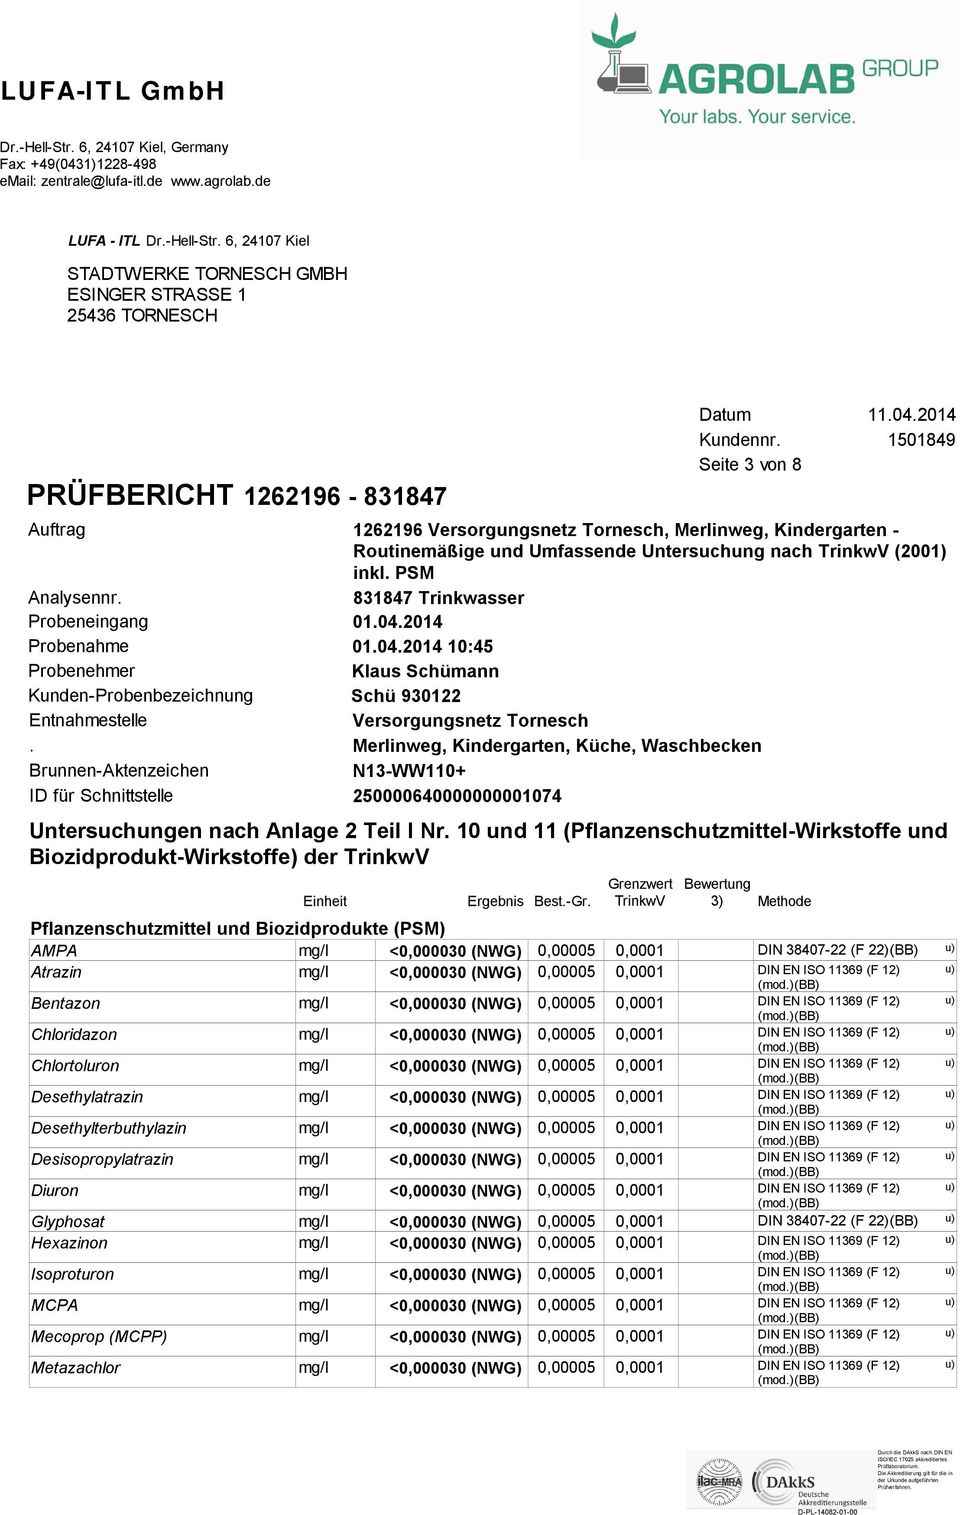 Brunnen-Aktenzeichen ID für Schnittstelle Pflanzenschutzmittel und Biozidprodukte (PSM) AMPA Atrazin Bentazon Chloridazon Chlortoluron Desethylatrazin Desethylterbuthylazin Desisopropylatrazin Diuron